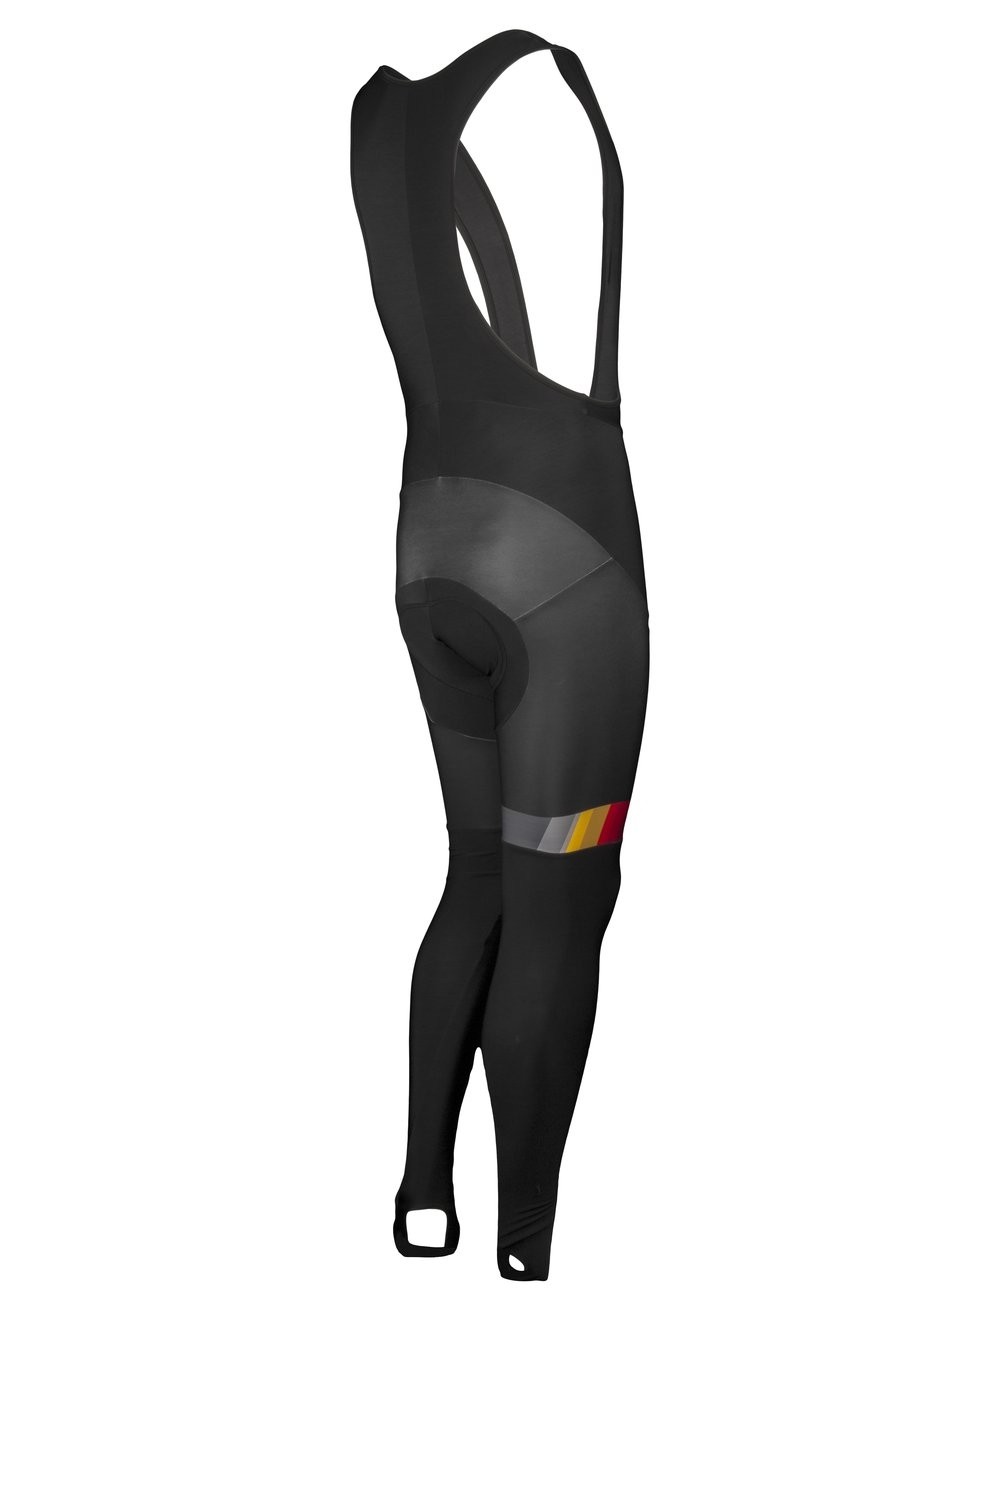 Vermarc belgica cuissard de cyclisme longues à bretelles noir